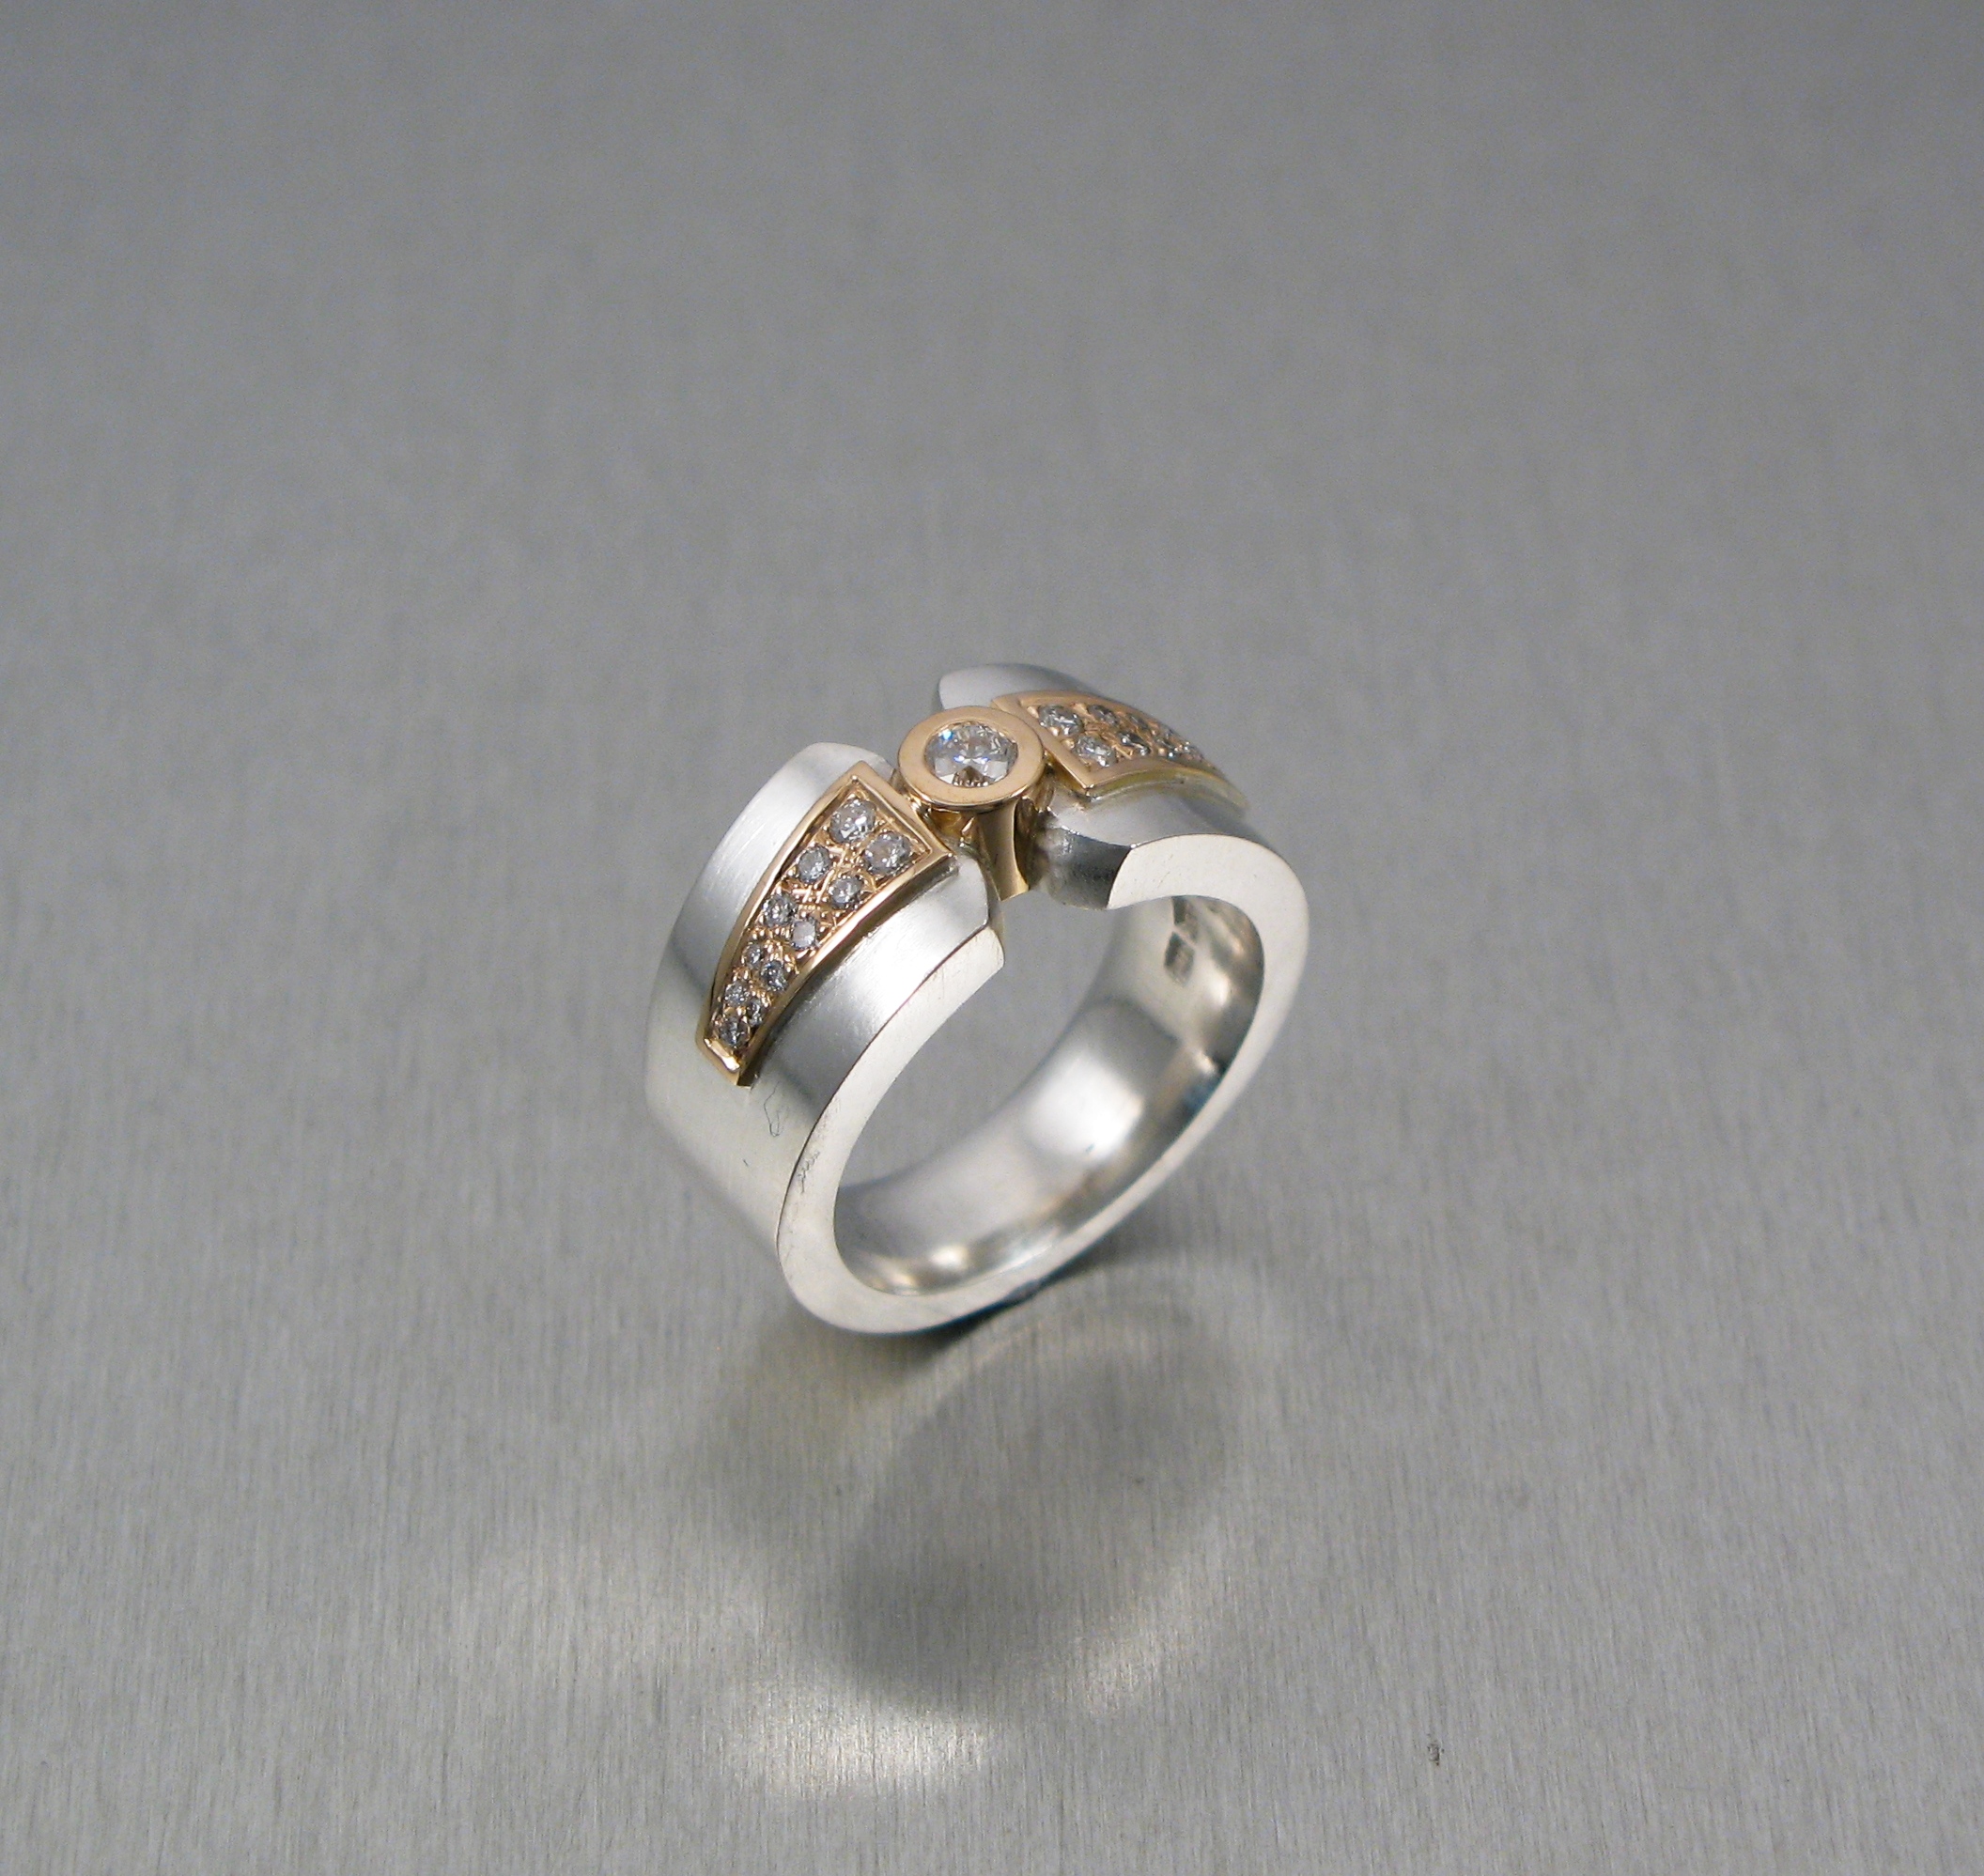 Ring, ”Fru Matsson”, silver, guld och briljanter.